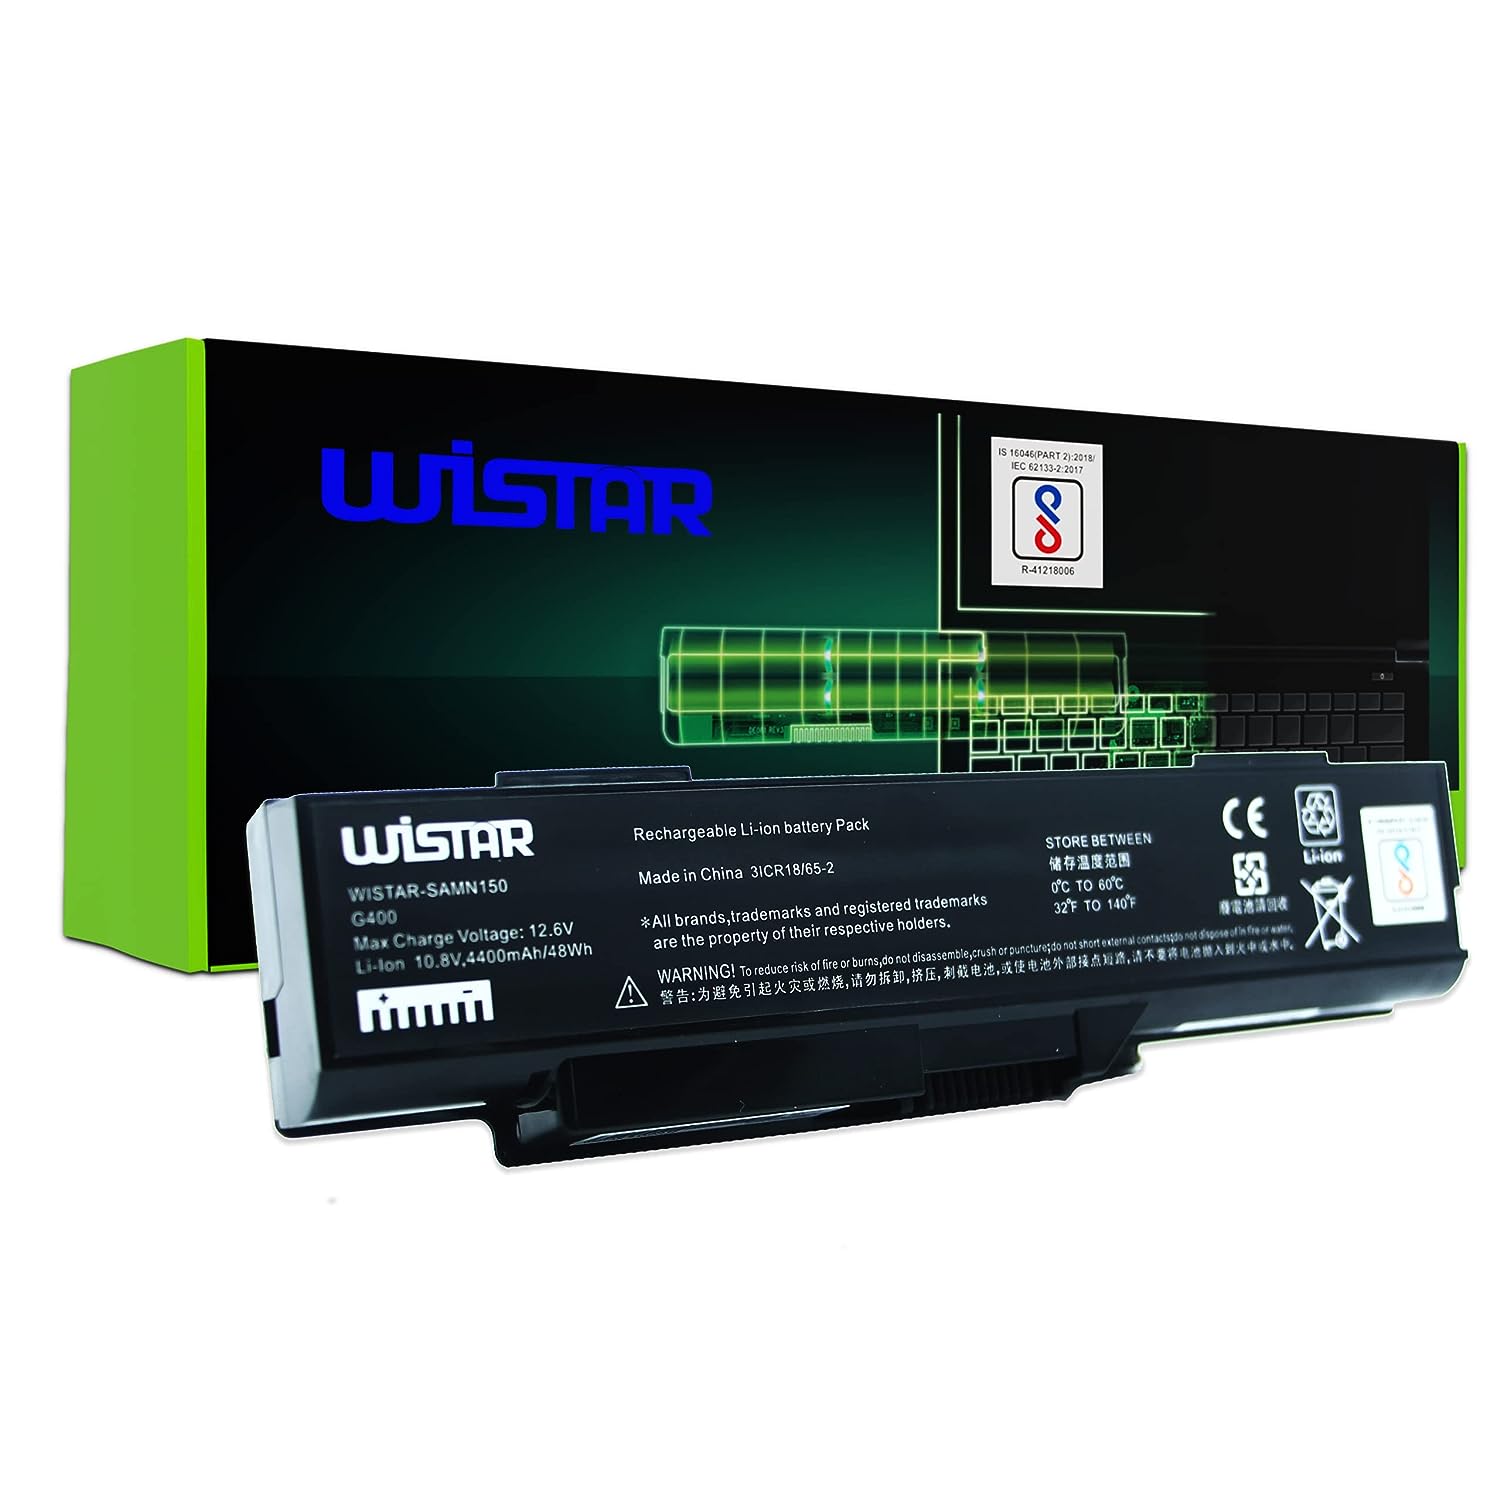 WISTAR Laptop Battery Compatible for Lenovo G400 3000 G400 3000 G400 59011ASM BAHL00L6S FRU 121SS080C